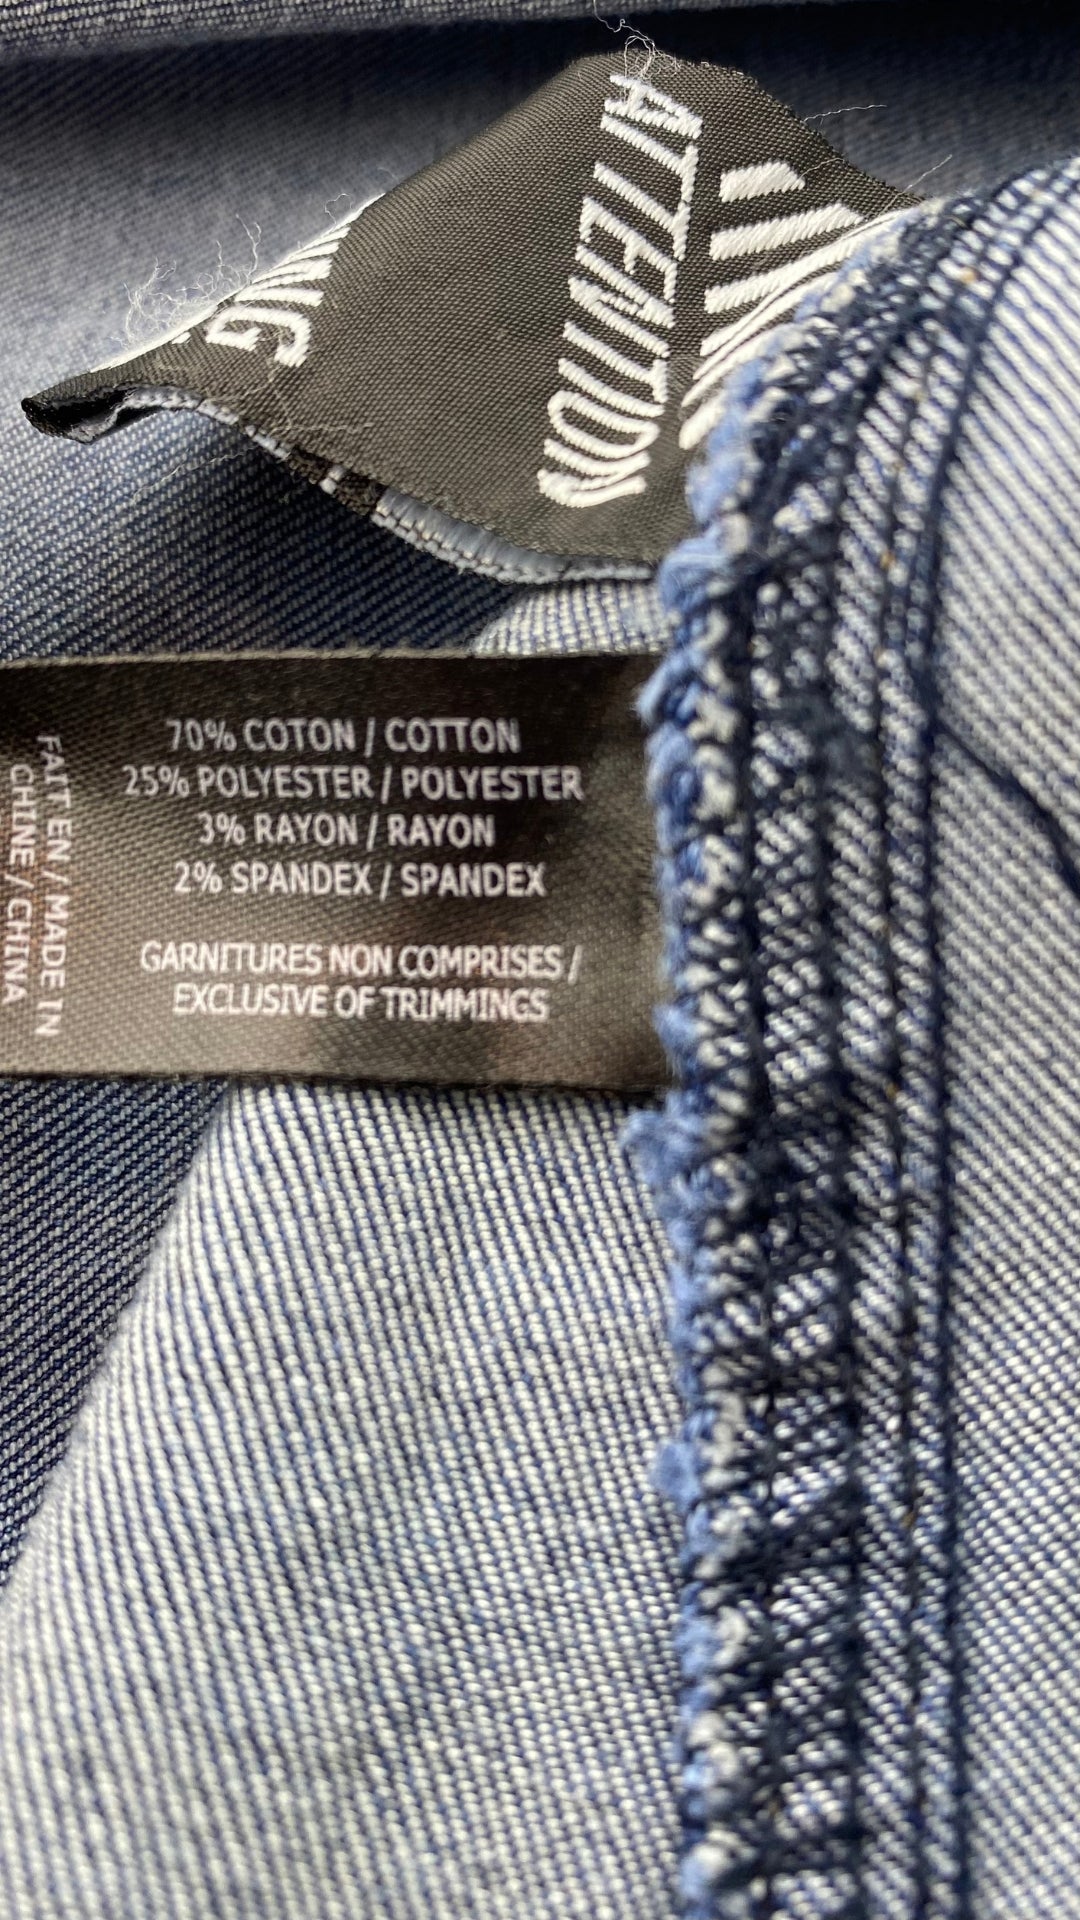 Jupe seconde main en jeans ligne A. Marque Icône par Simons, taille small. Vue de l'étiquette de composition.